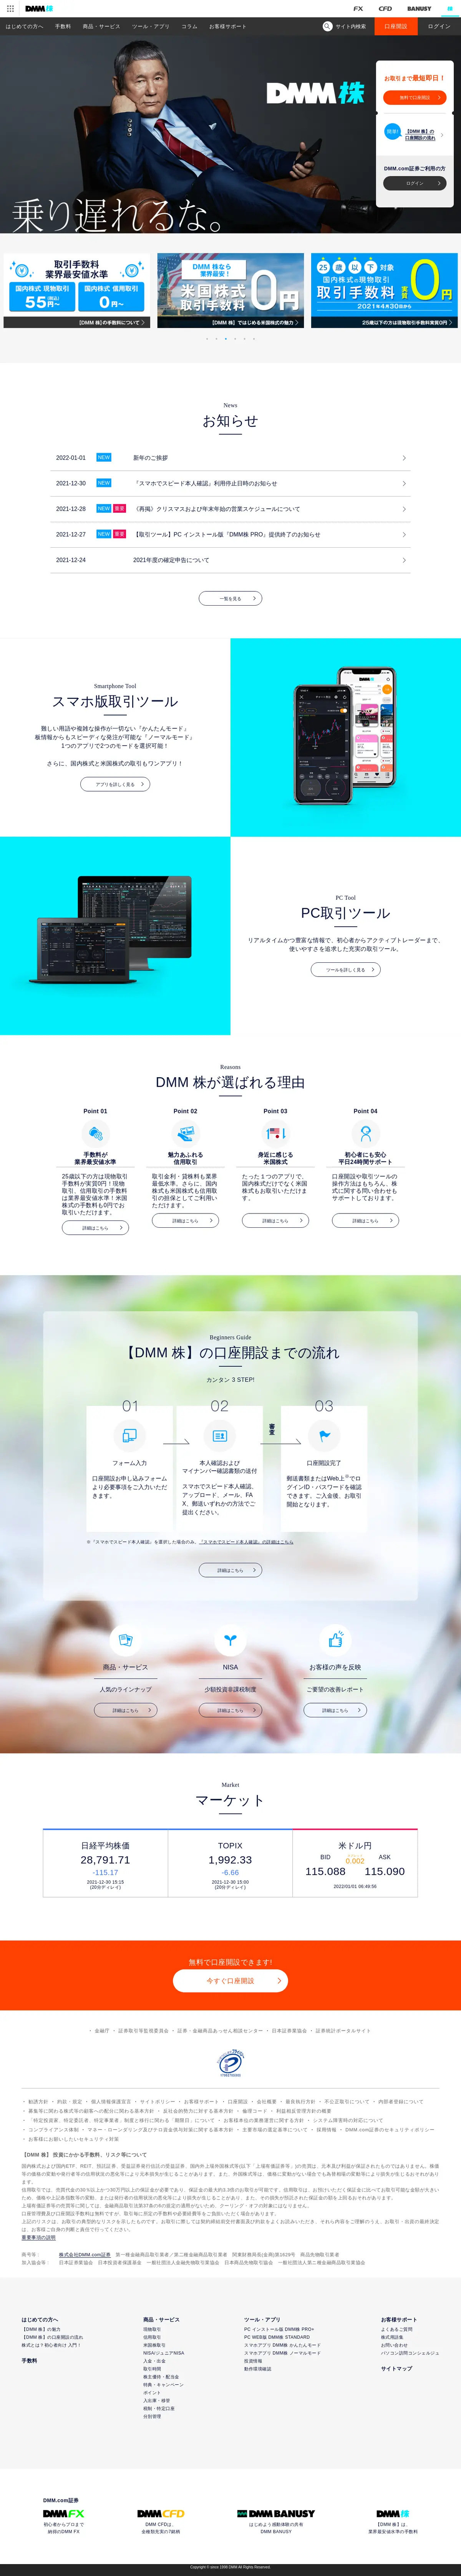 キャプチャ画面 会社名:DMM.com Groupプロジェクト名:DMM 株 画面名:全国トップ デバイス名:PCカテゴリ:金融・保険タグ:全国トップ